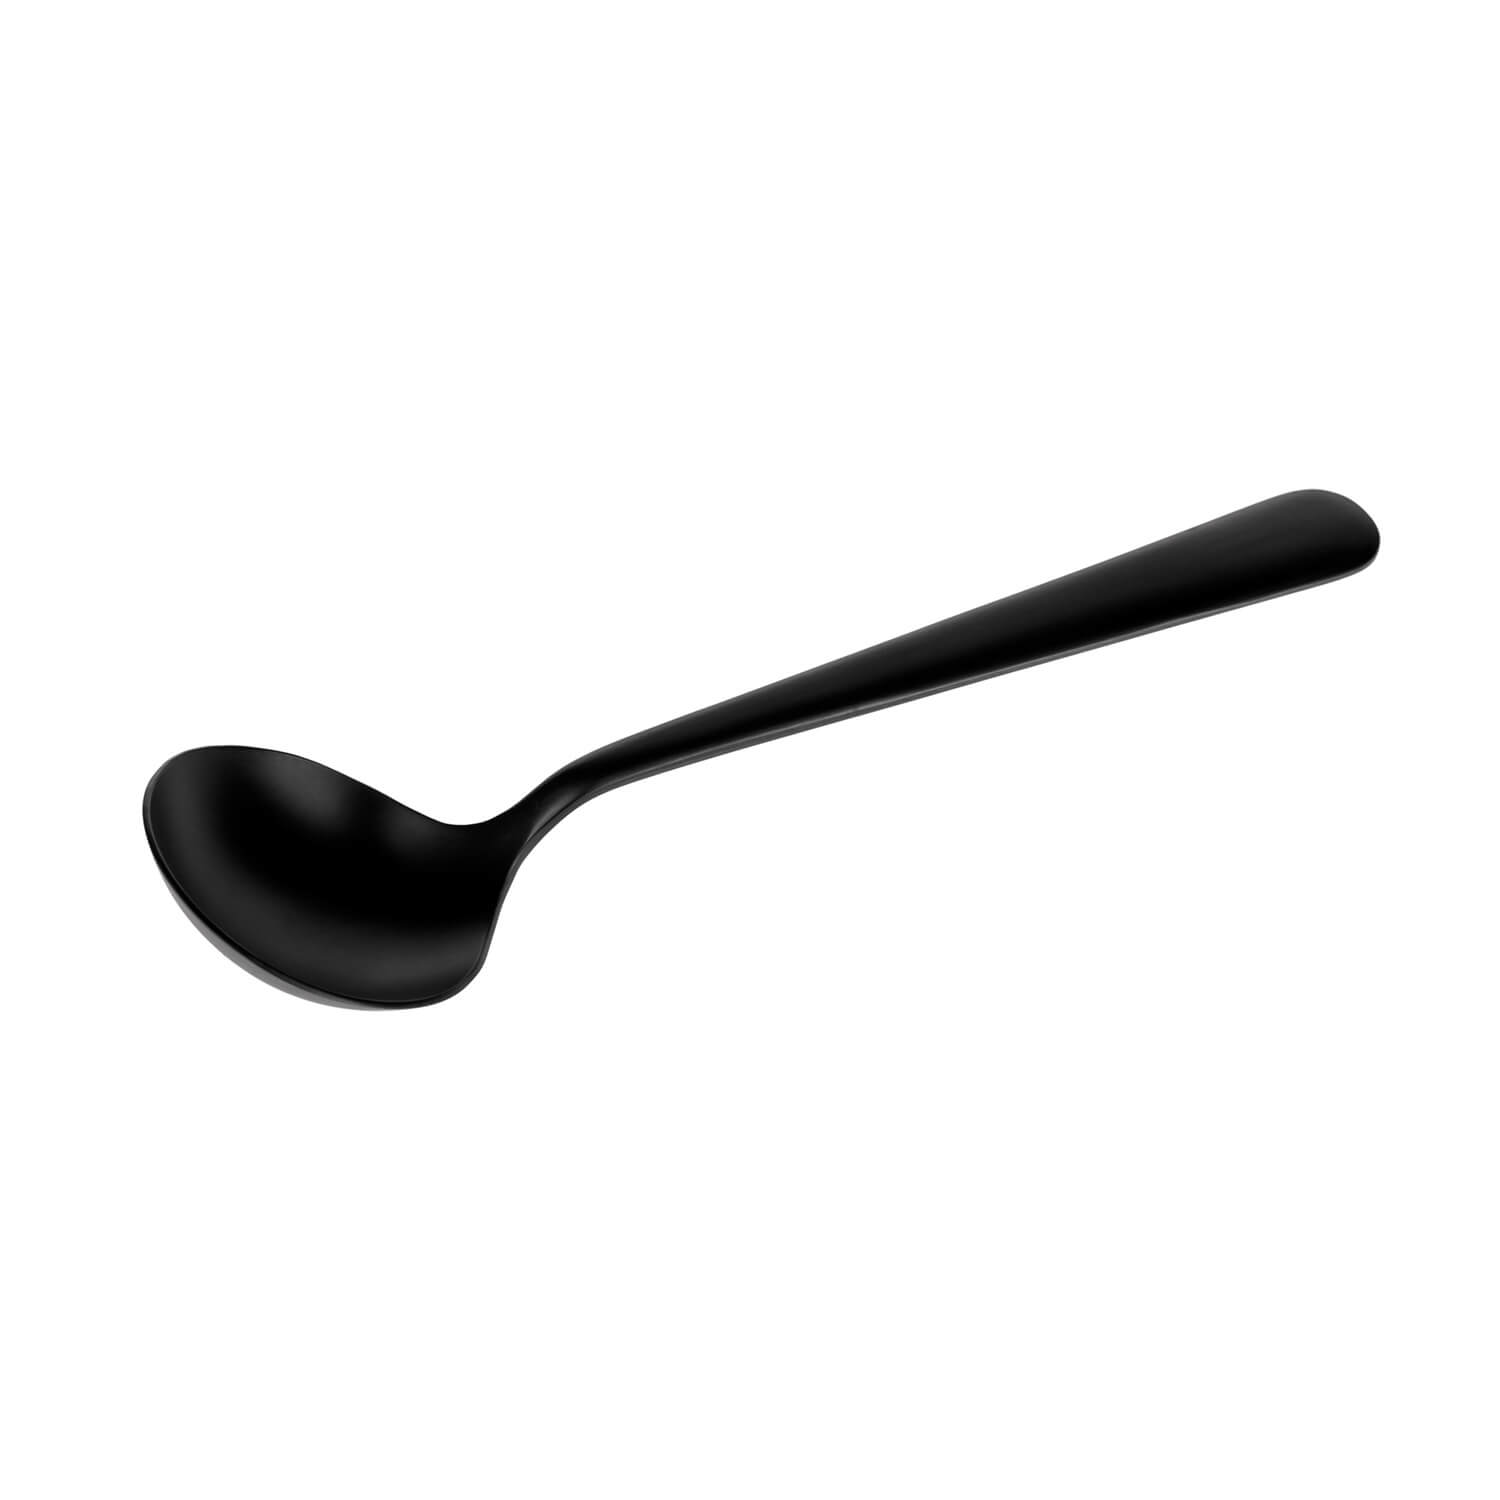 Hario Kasuya cupping - tasting spoon